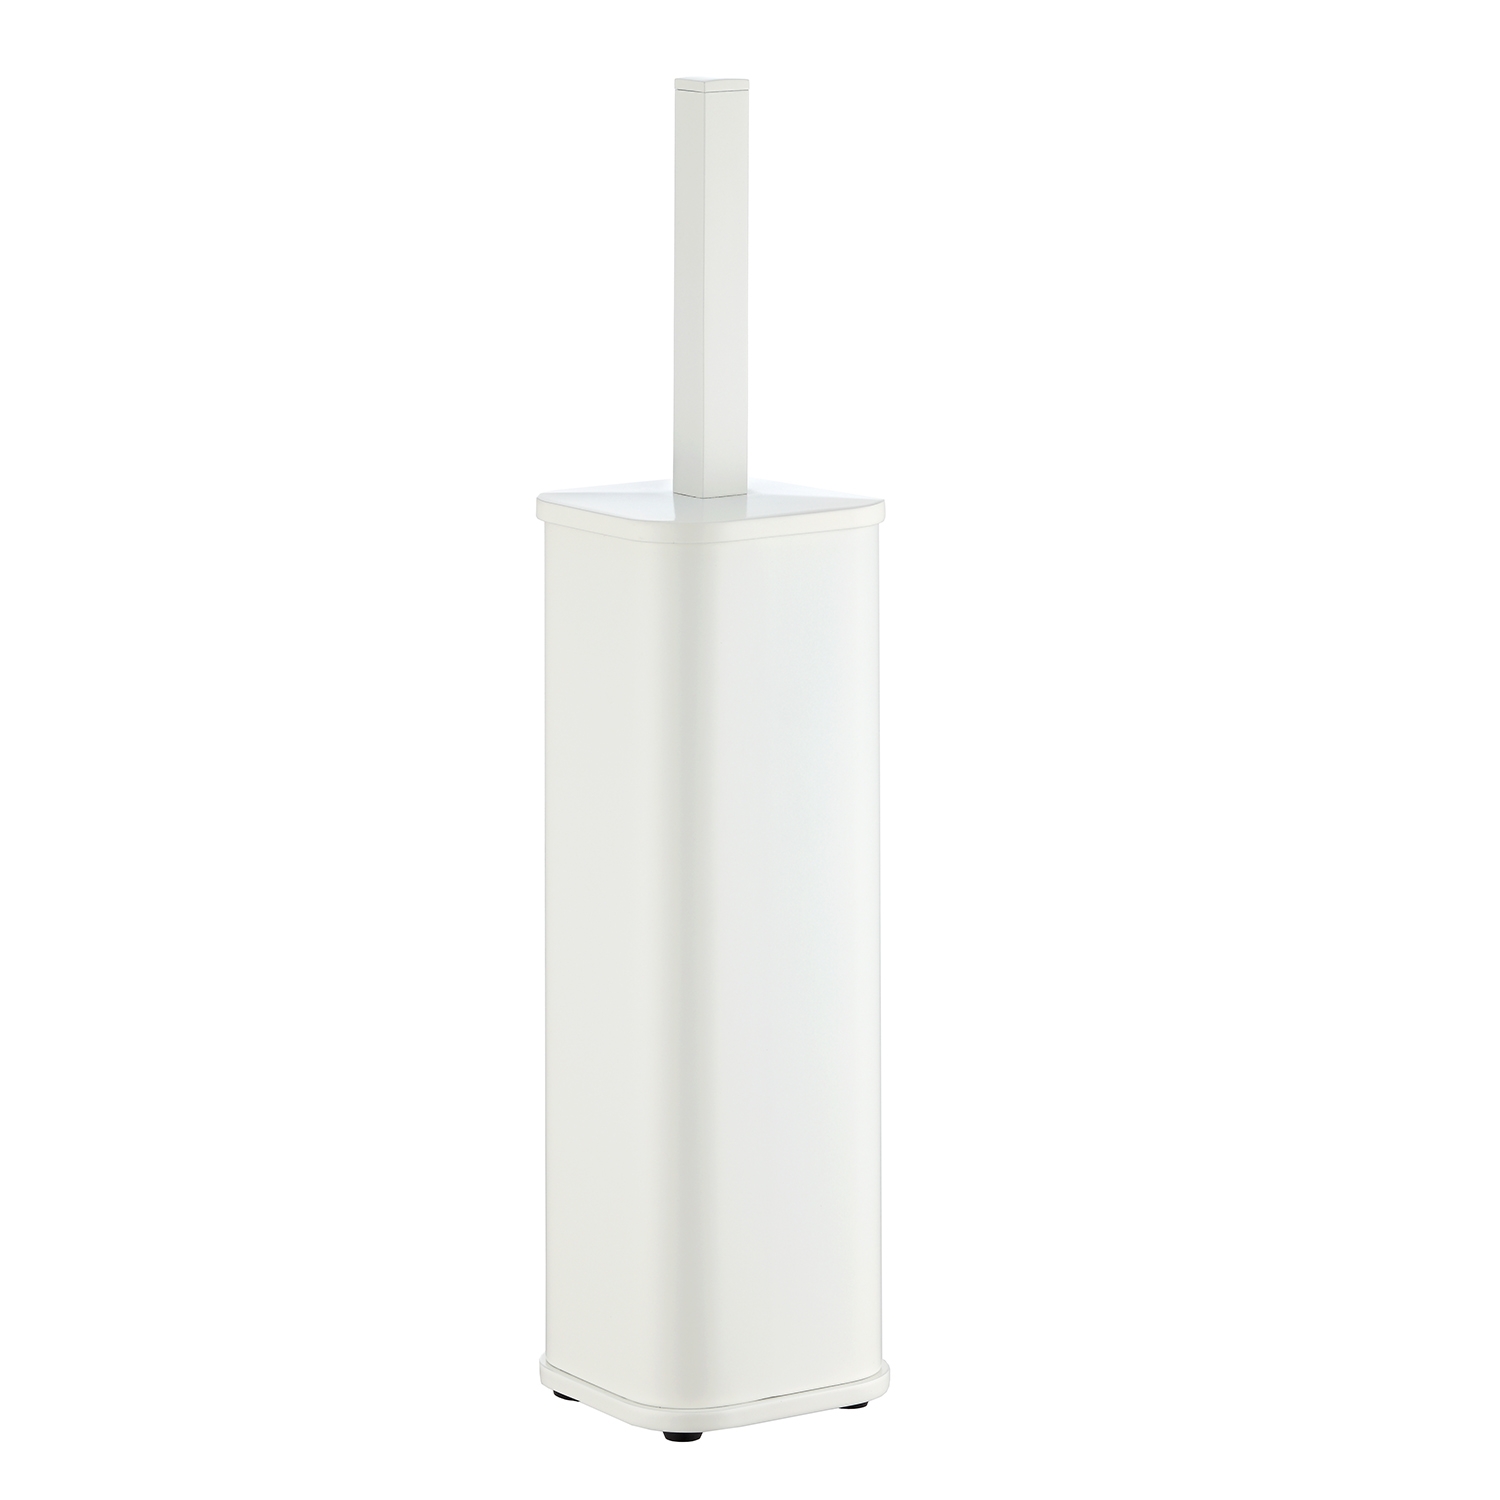 K-1117 WHITE Floor standing toilet brush holder